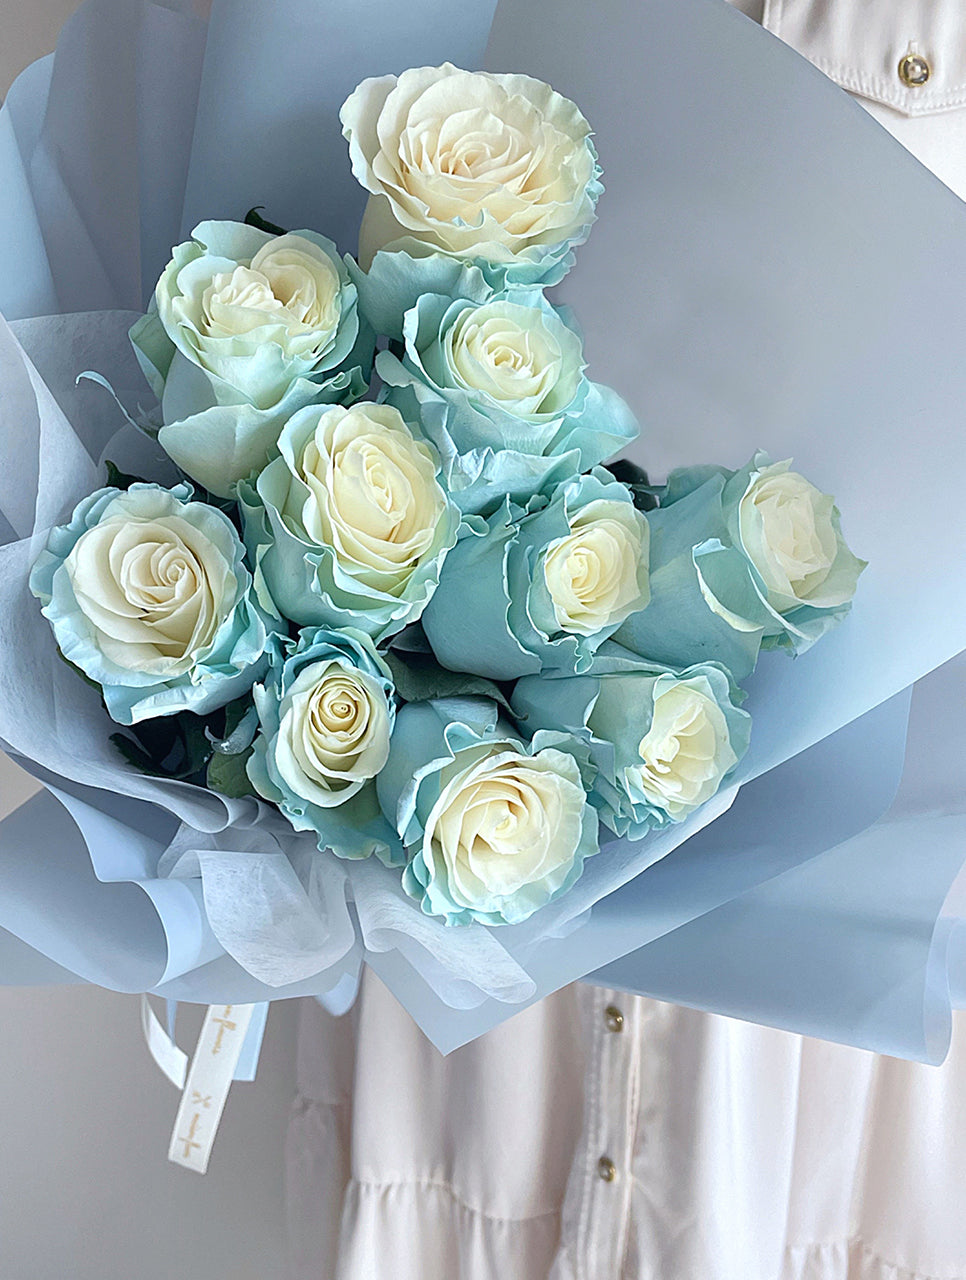 藍玫瑰花束, 冰藍玫瑰, Blue rose bouquet